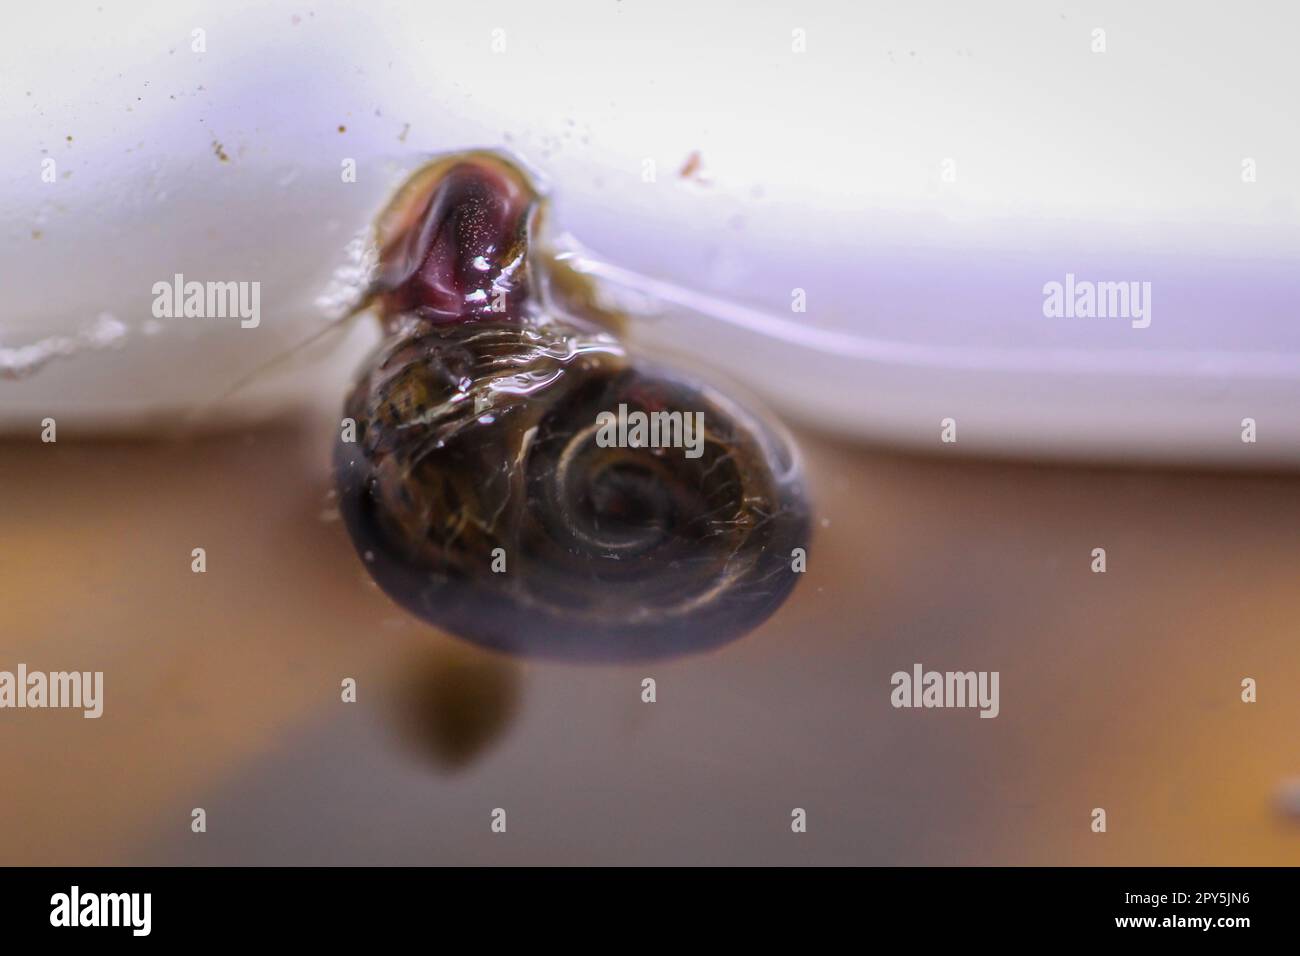 Un escargot de corne de poteau sur le panneau de verre d'un aquarium. Banque D'Images